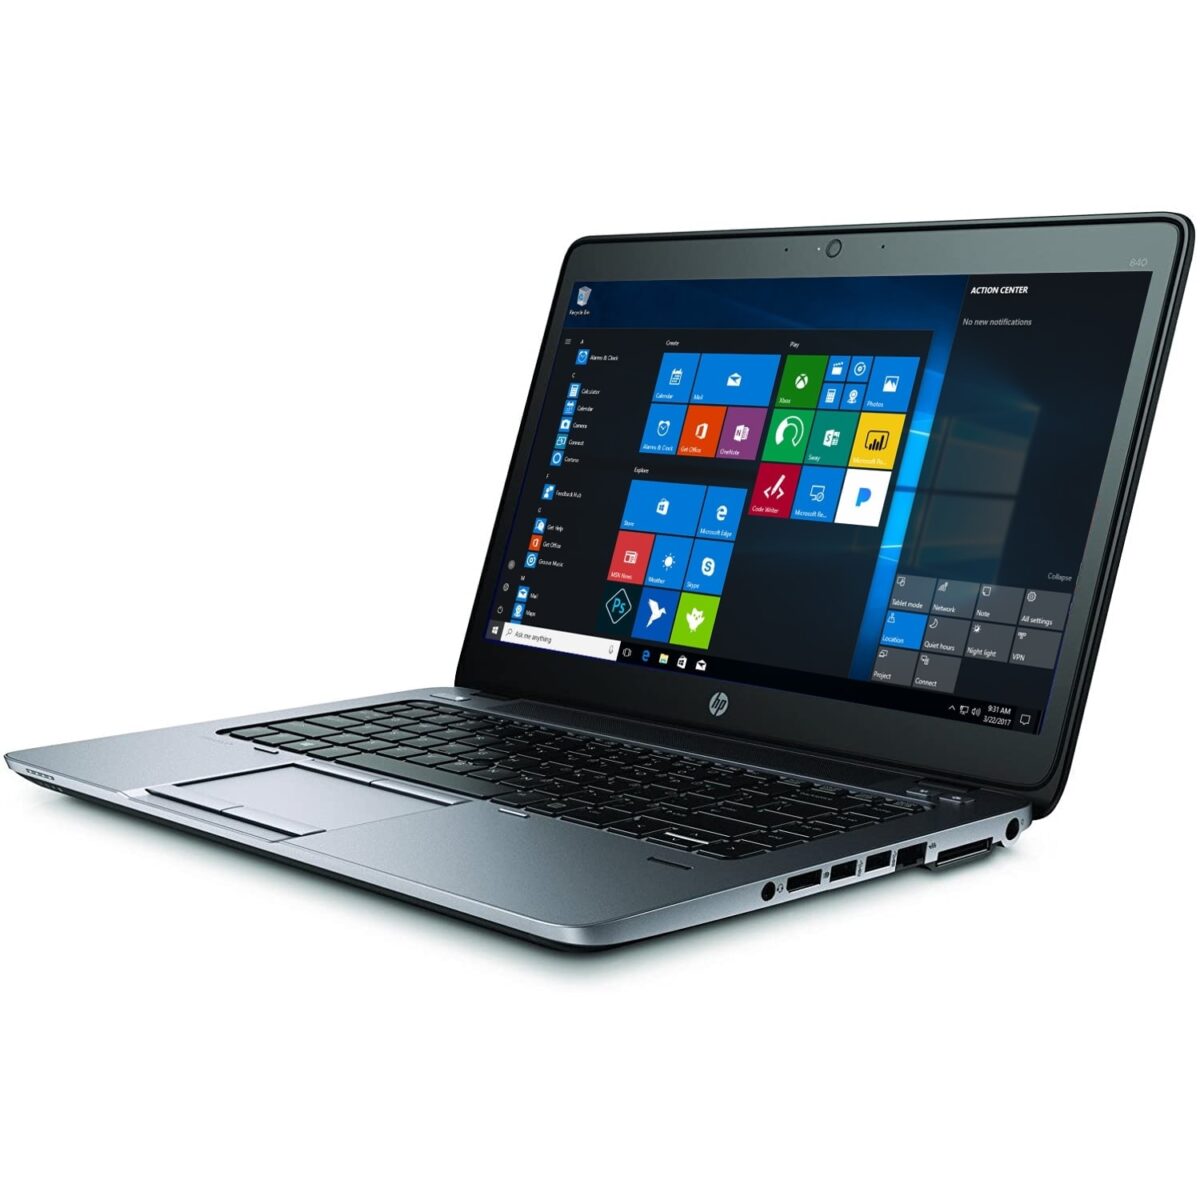 HP EliteBook 840 G2 SIDE